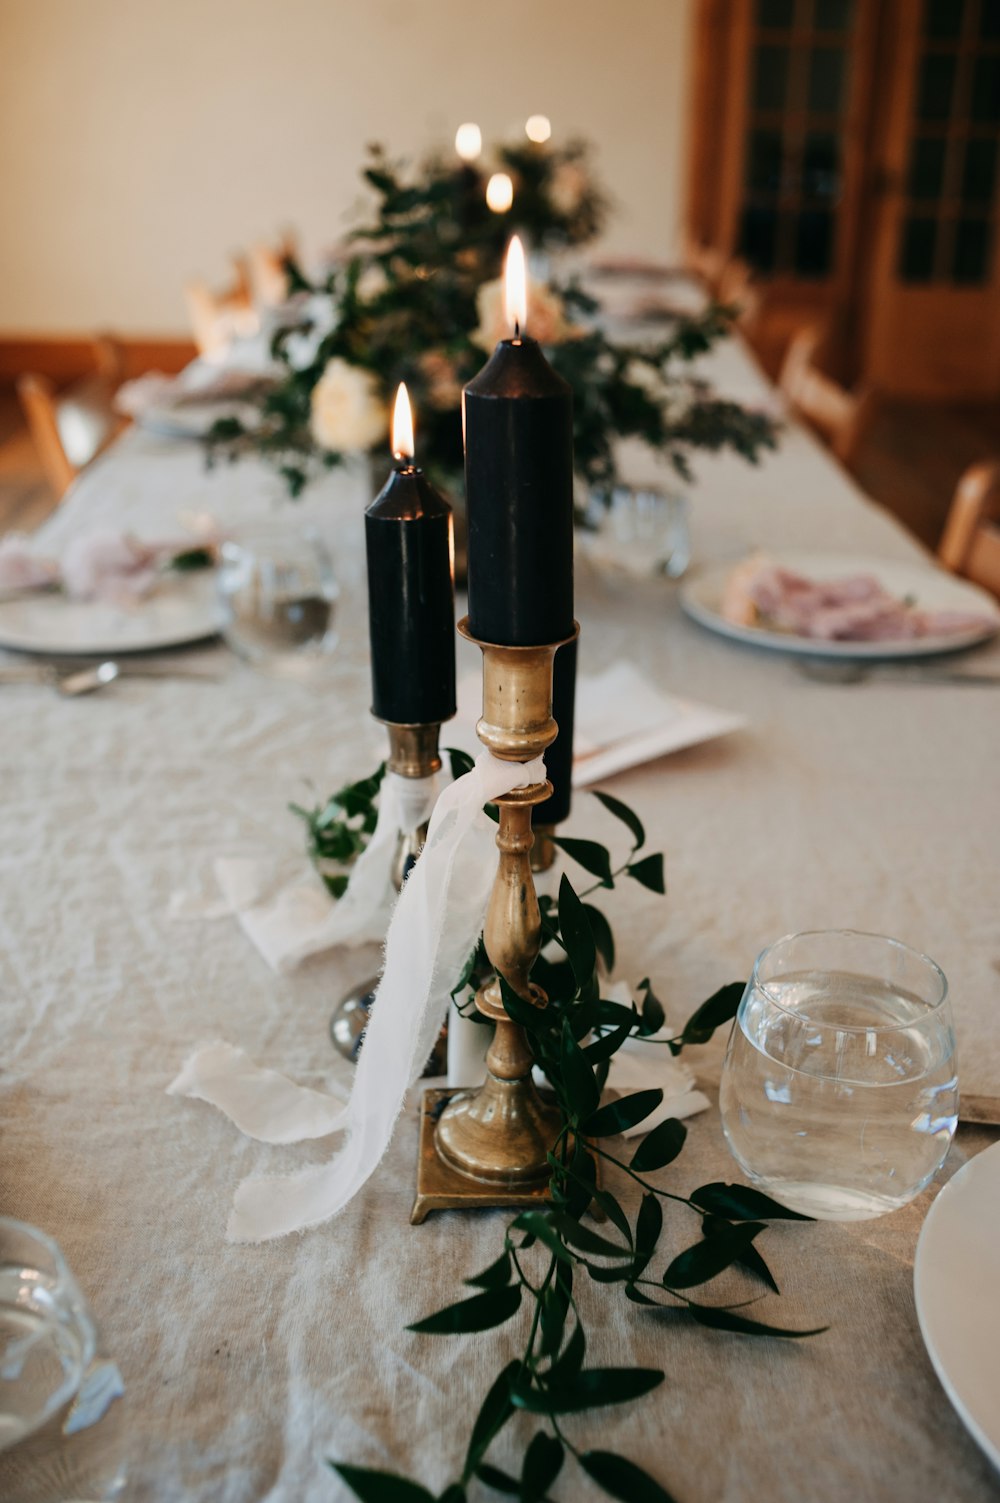 두 개의 촛불이 있는 긴 테이블